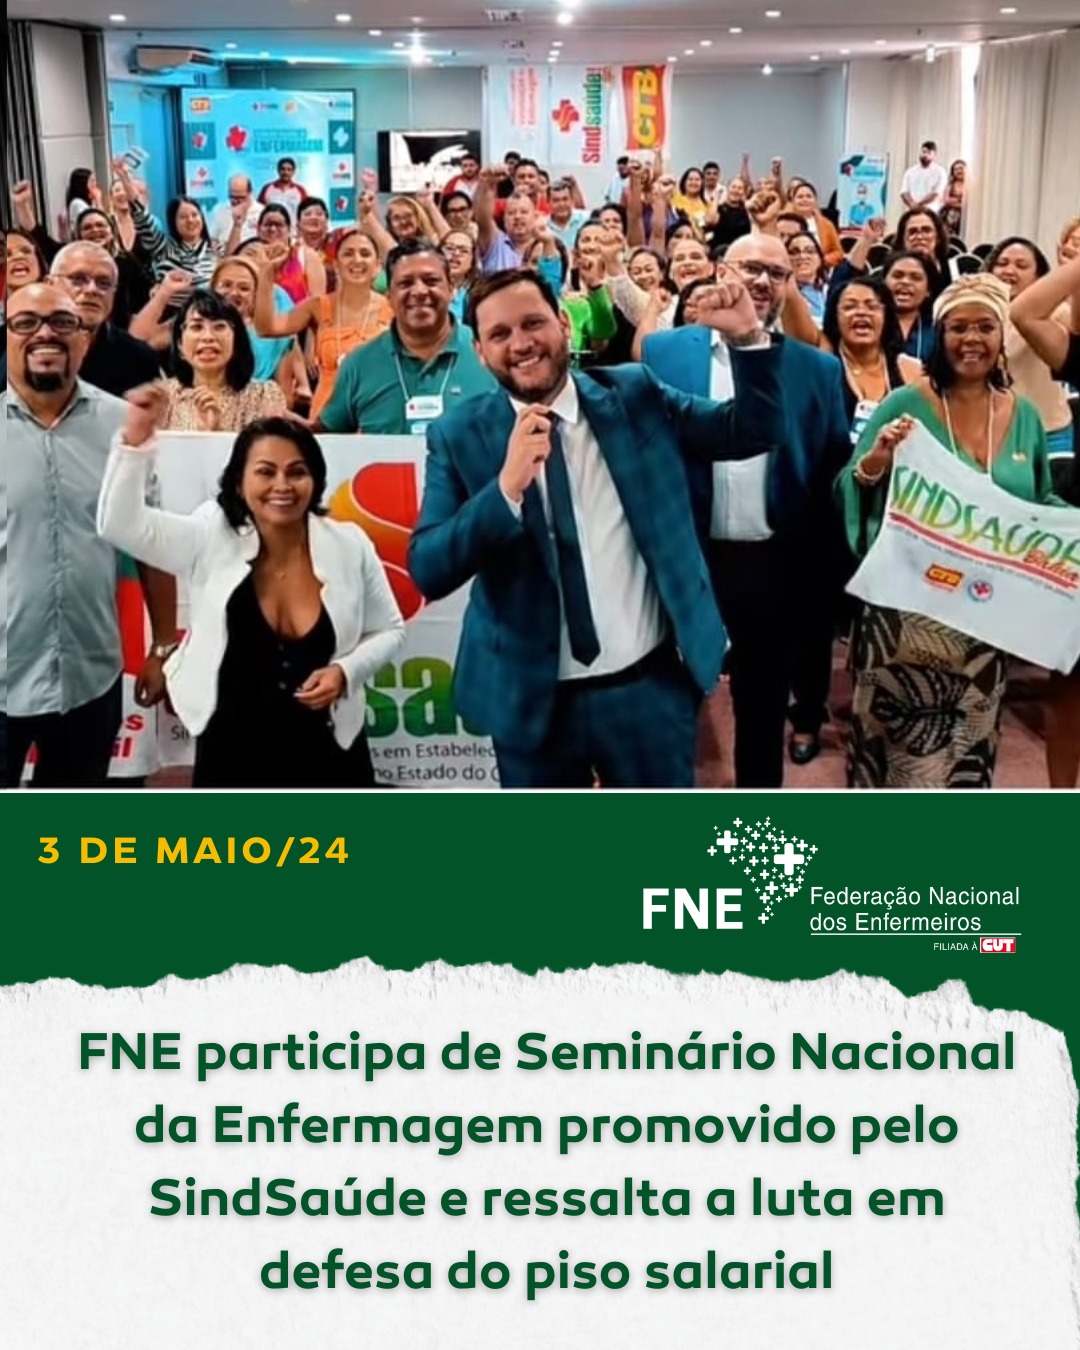 FNE participa do Seminário Nacional da Enfermagem promovido pelo SindSaúde e ressalta a luta da categoria em defesa do piso salarial no STF